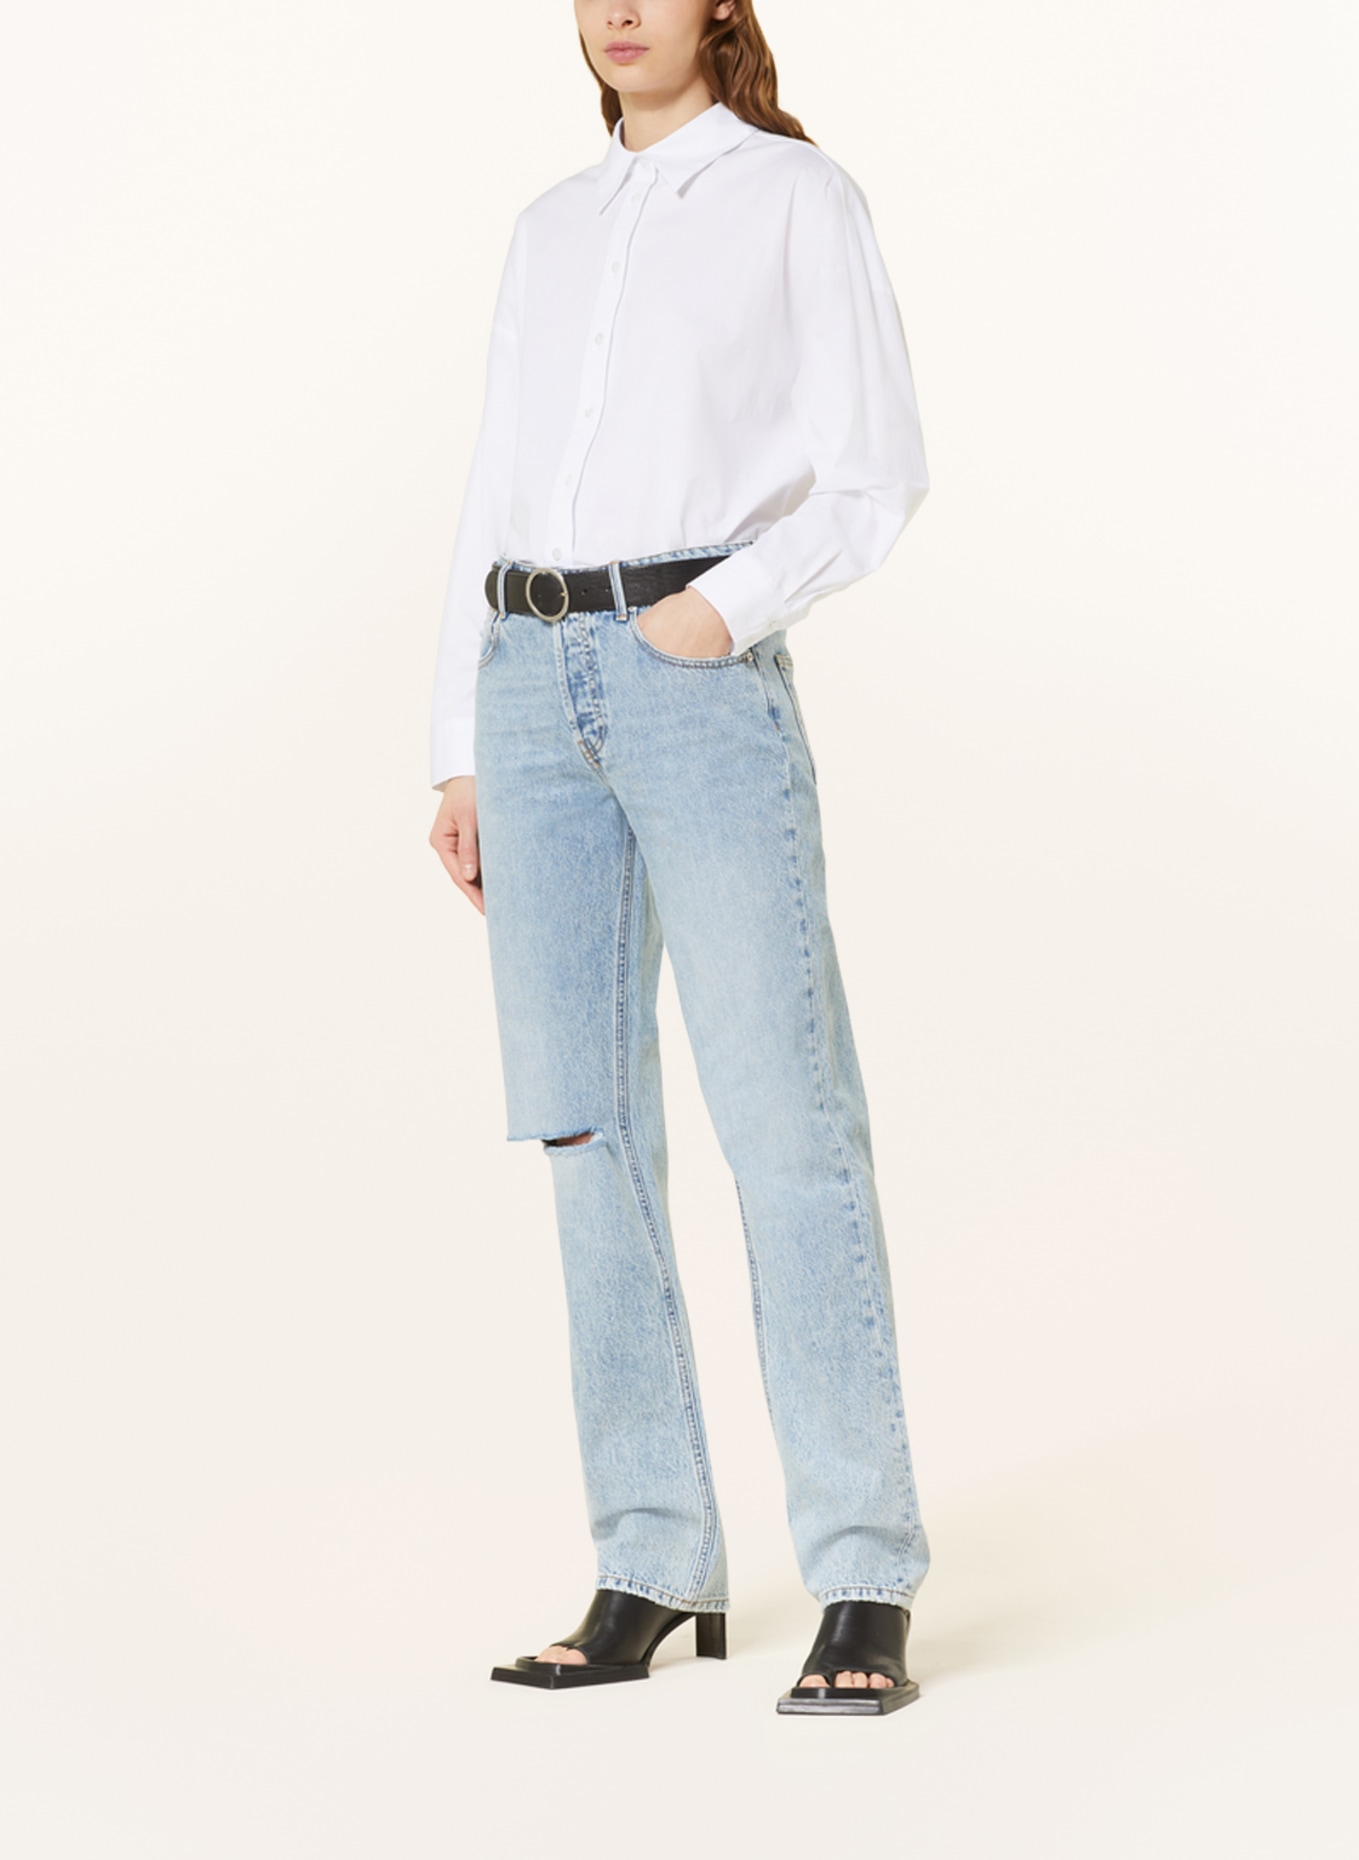 THE.NIM STANDARD Straight jeans JANE, Color: W740-VTL VINTAGE LIGHT (Image 2)